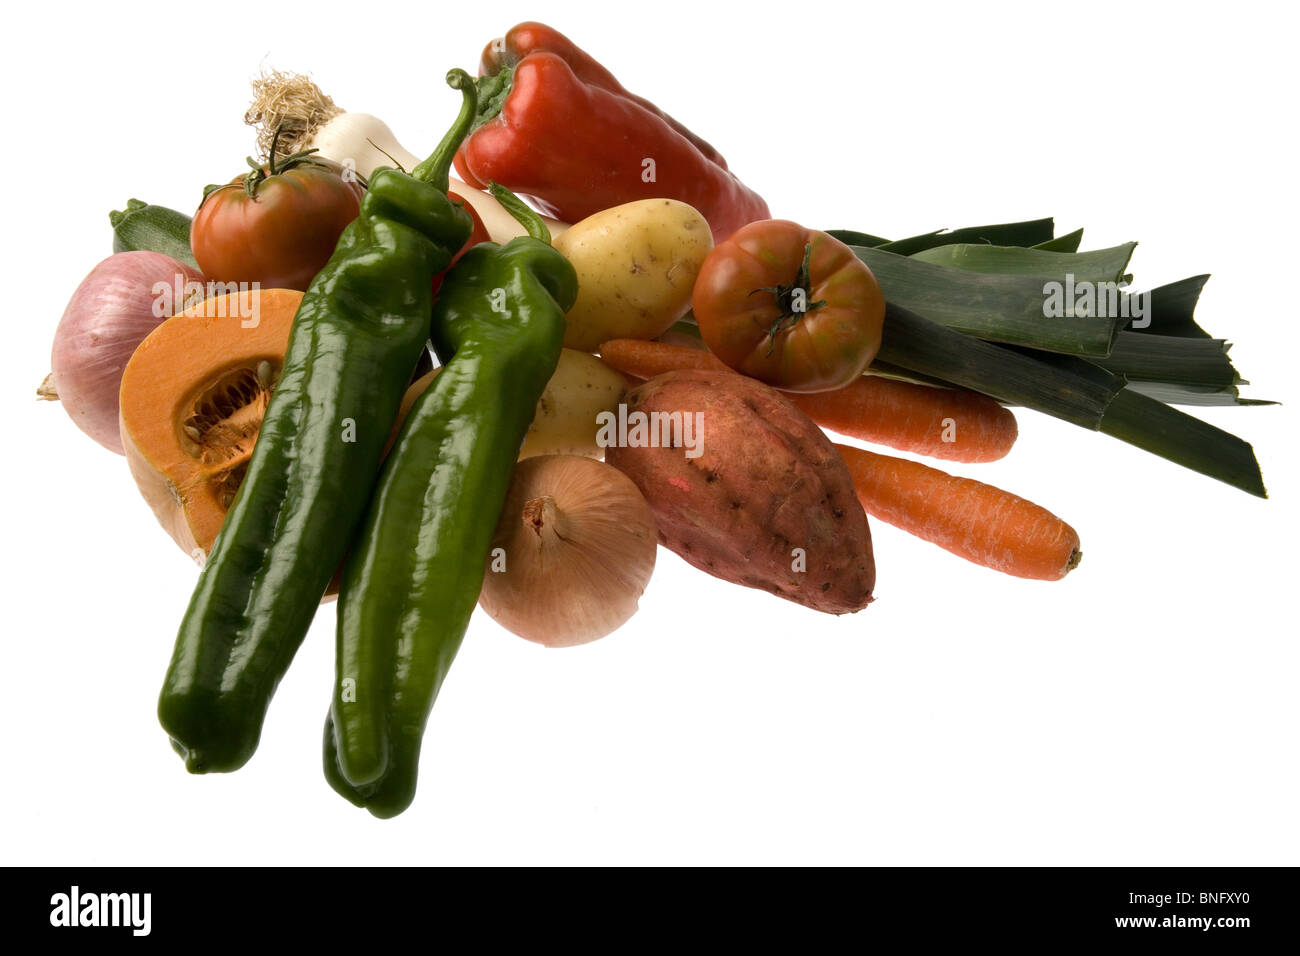 Un gruppo di verde e peperoni rossi, zucca, patate dolci, pomodori, cipolle patate e porri isolata contro il bianco. Foto Stock